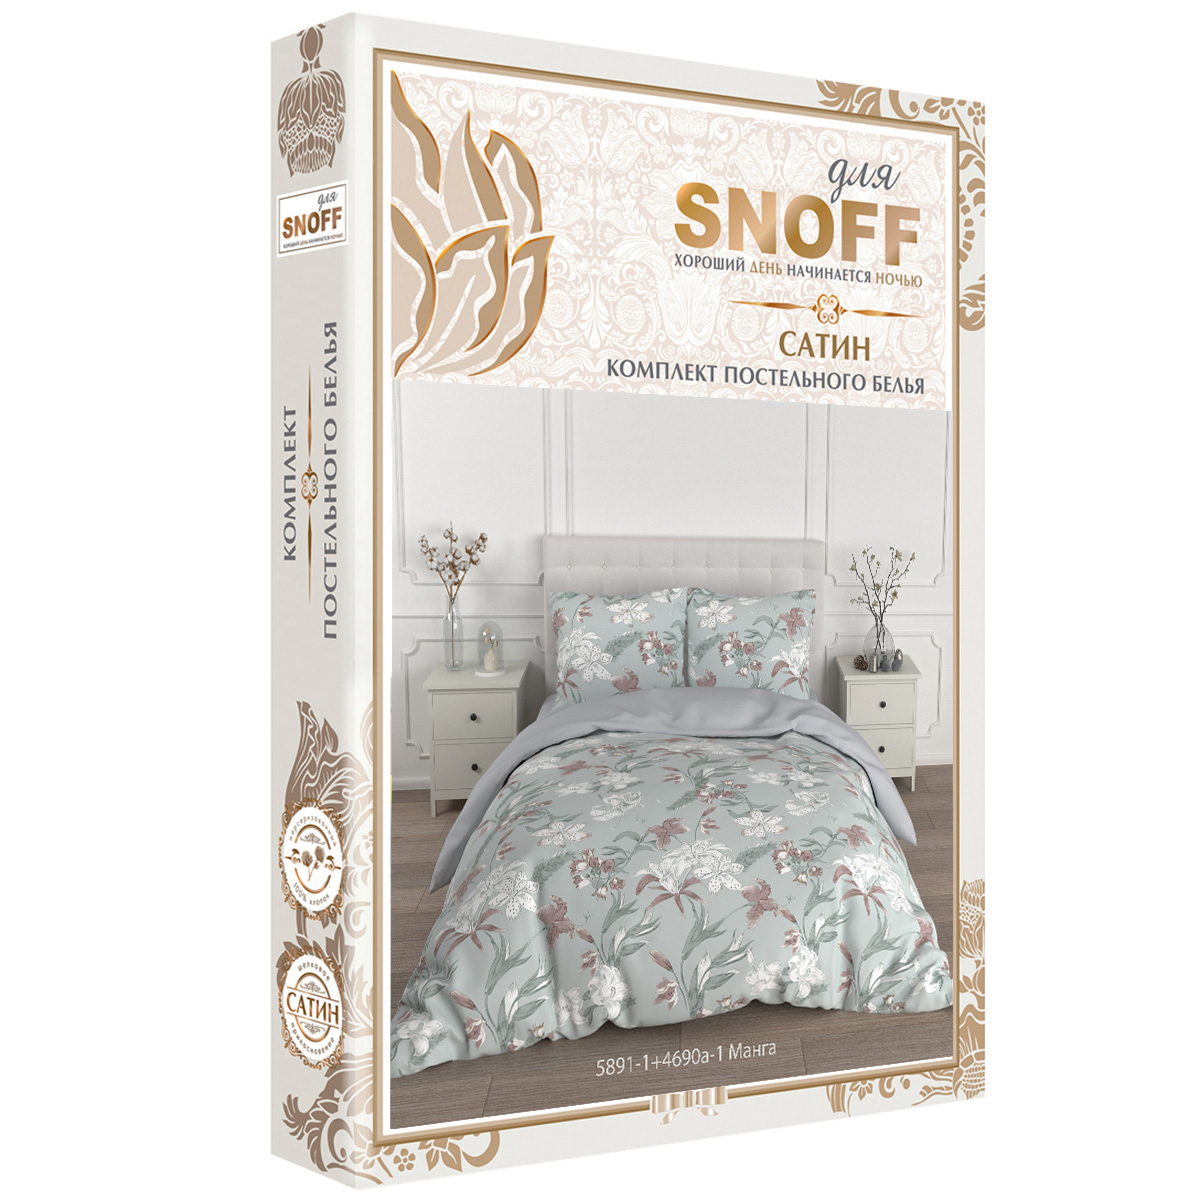 Комплект постельного белья для SNOFF Манга евро сатин - фото 7